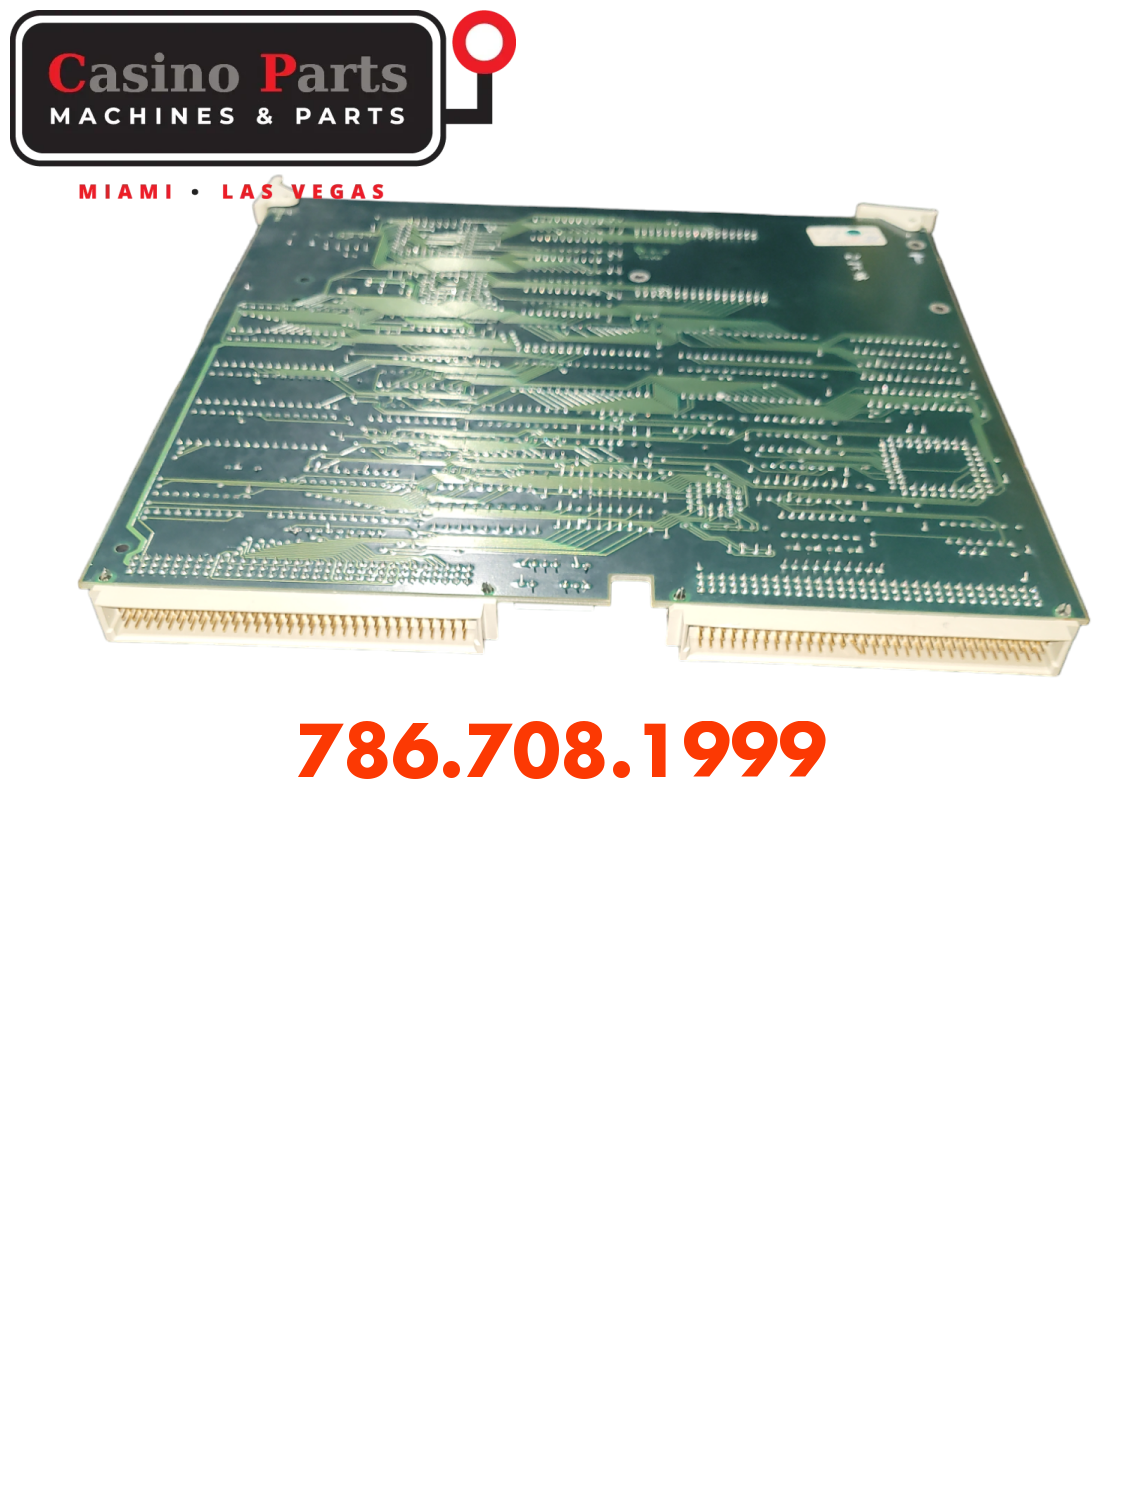 Wms Bb1 - Cpu Board W/ Piggyback Memory